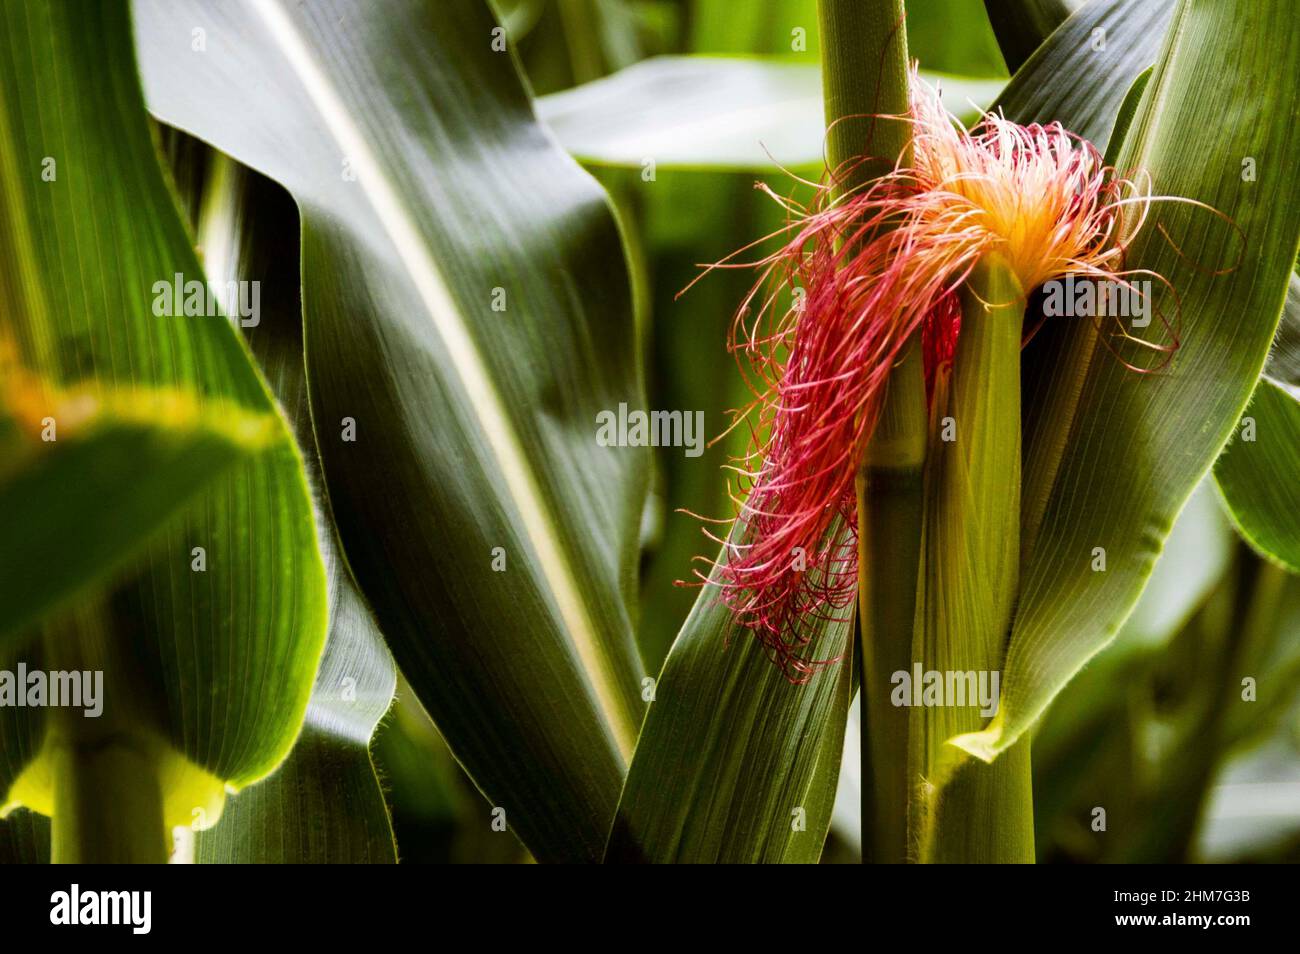 La flor masculina de la planta de maíz es conocida como una tasel de maíz y  aparece en la parte superior de la planta para producir polen que fomenta  la maduración Fotografía